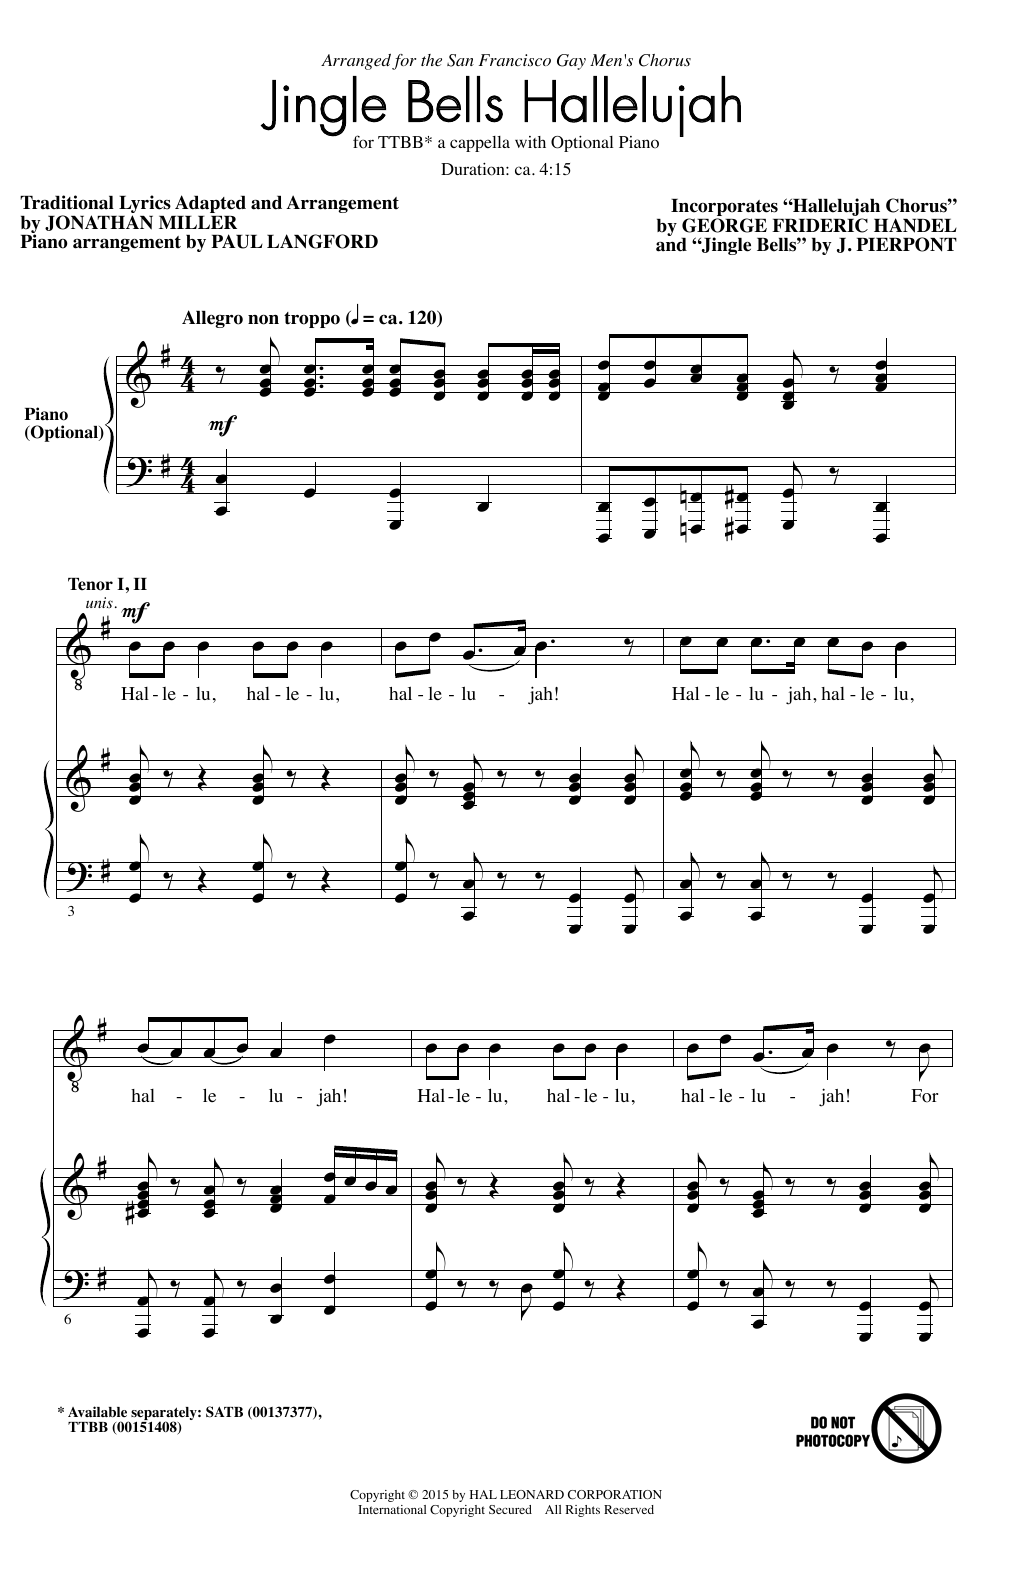 Download Jonathan Miller Hallelujah Chorus Sheet Music